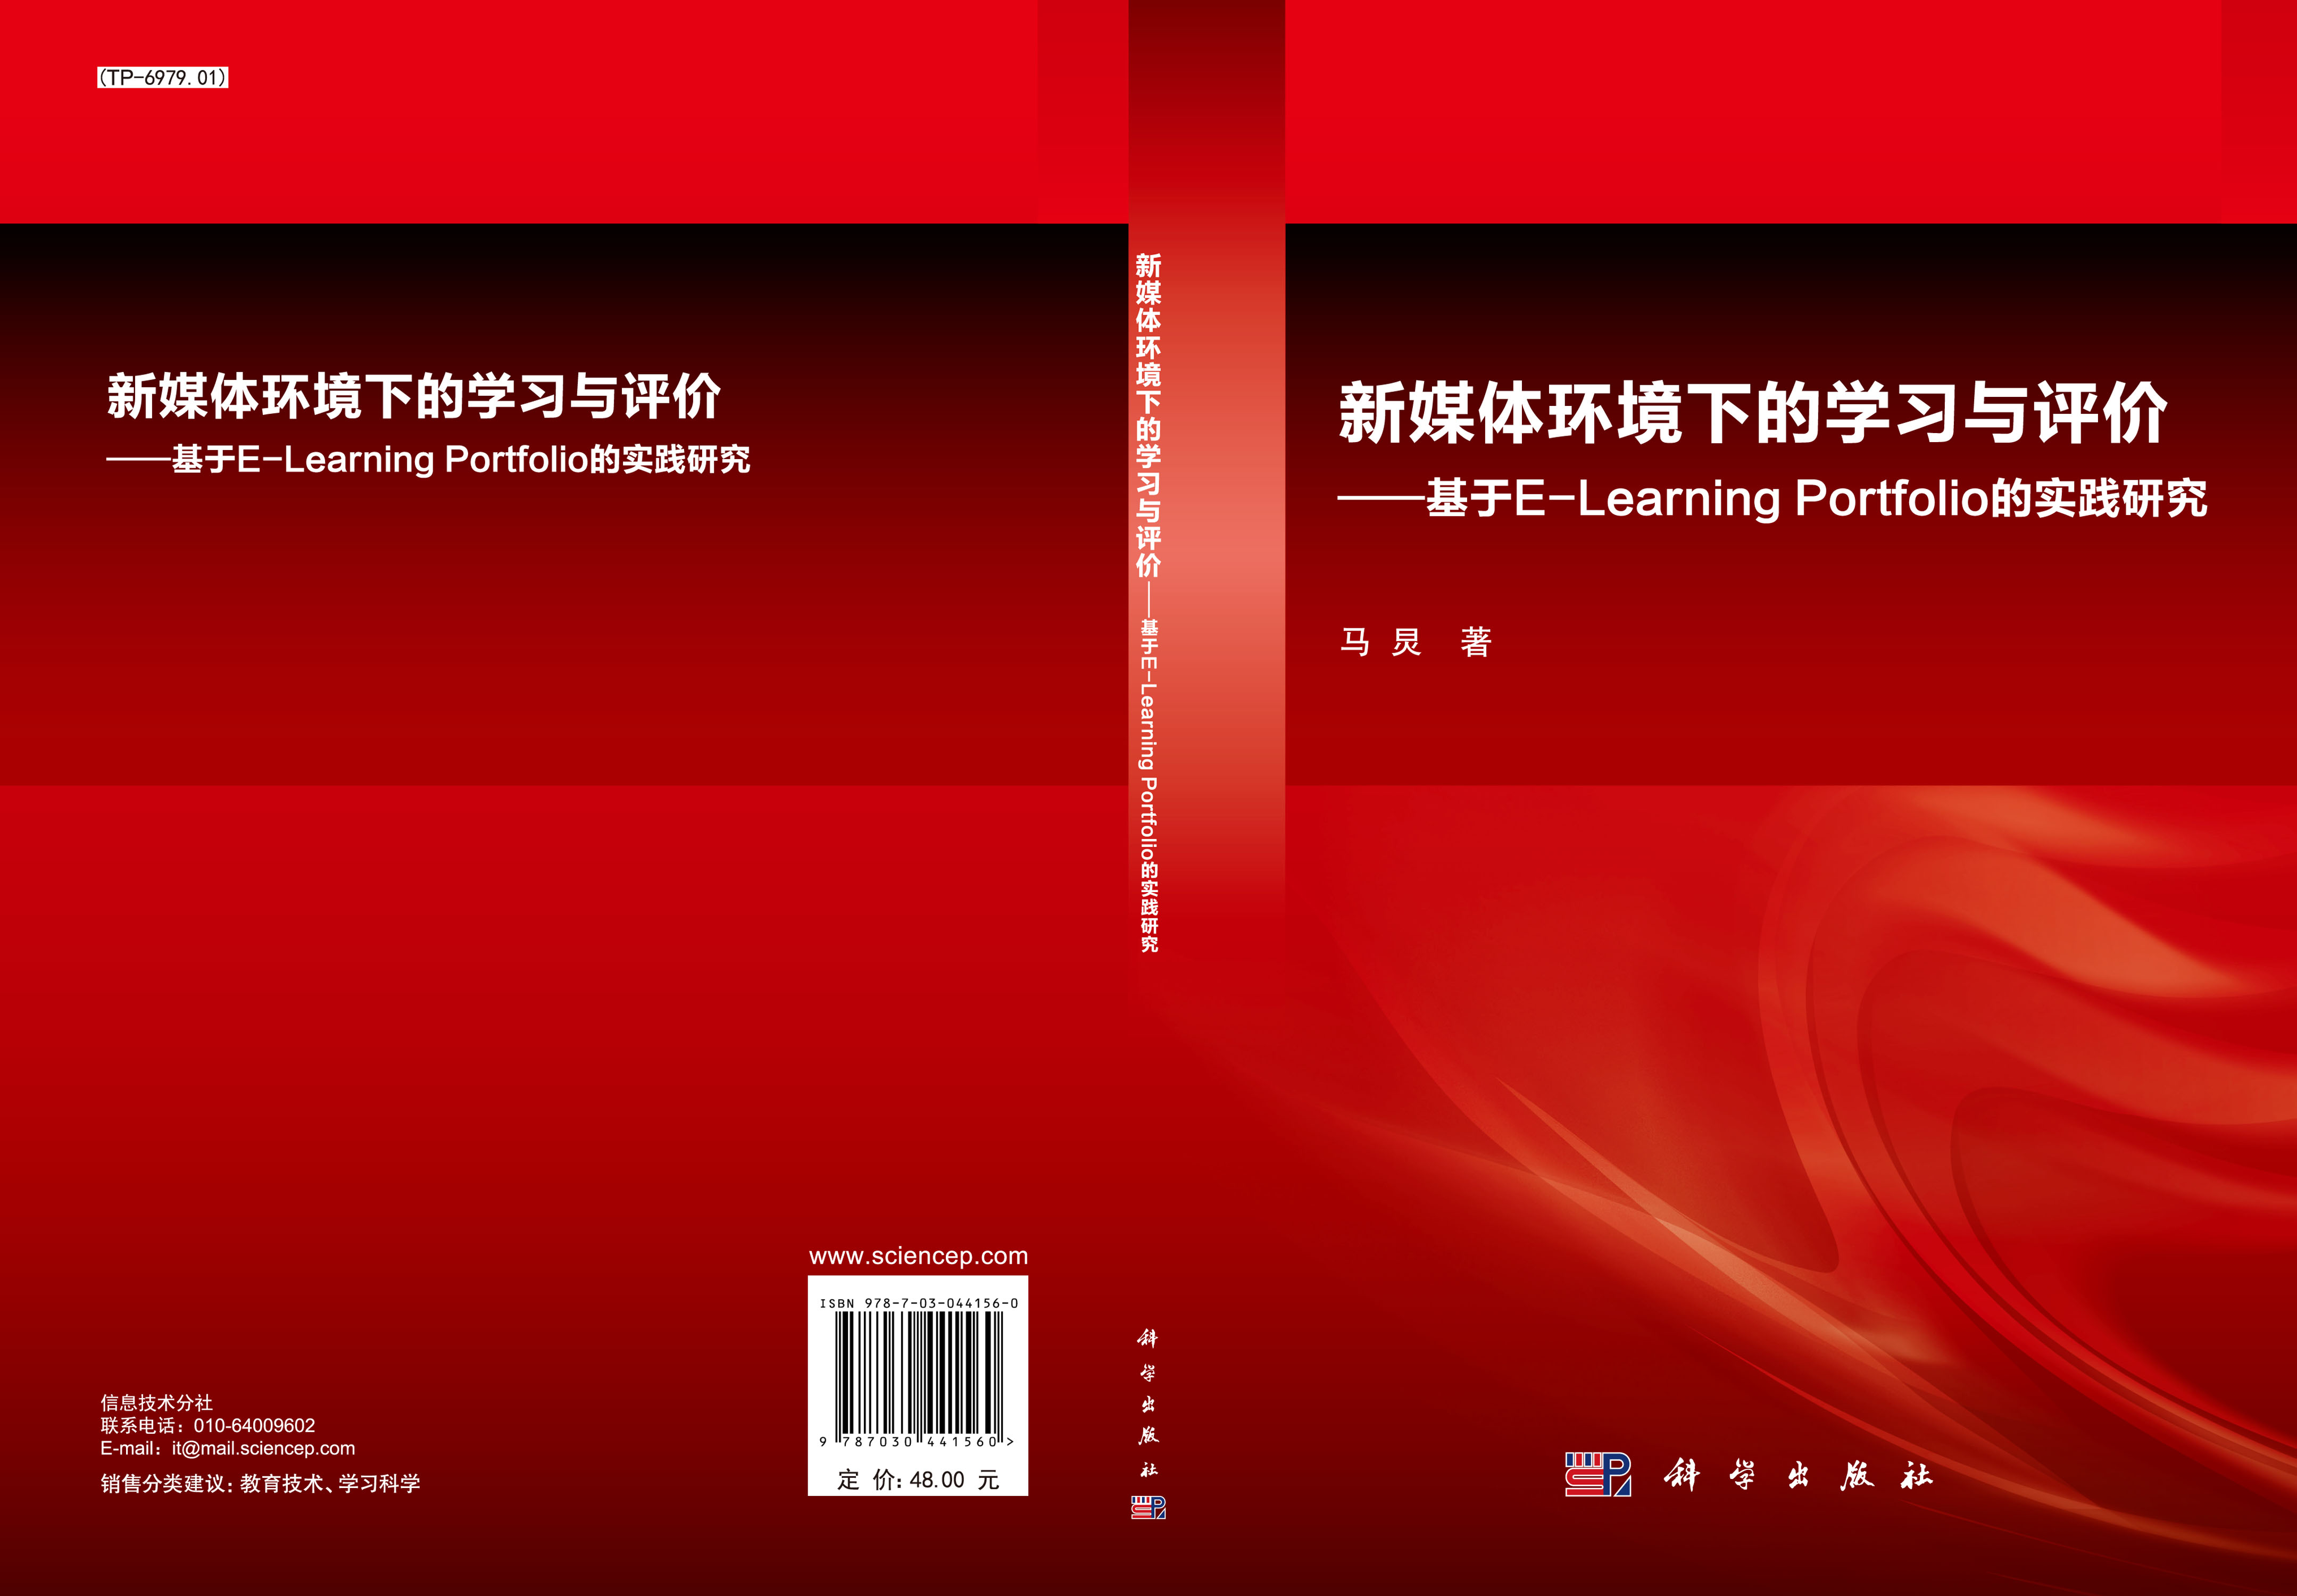 新媒体环境下的学习与评价 : 基于E-Learning Portfolio的实践研究